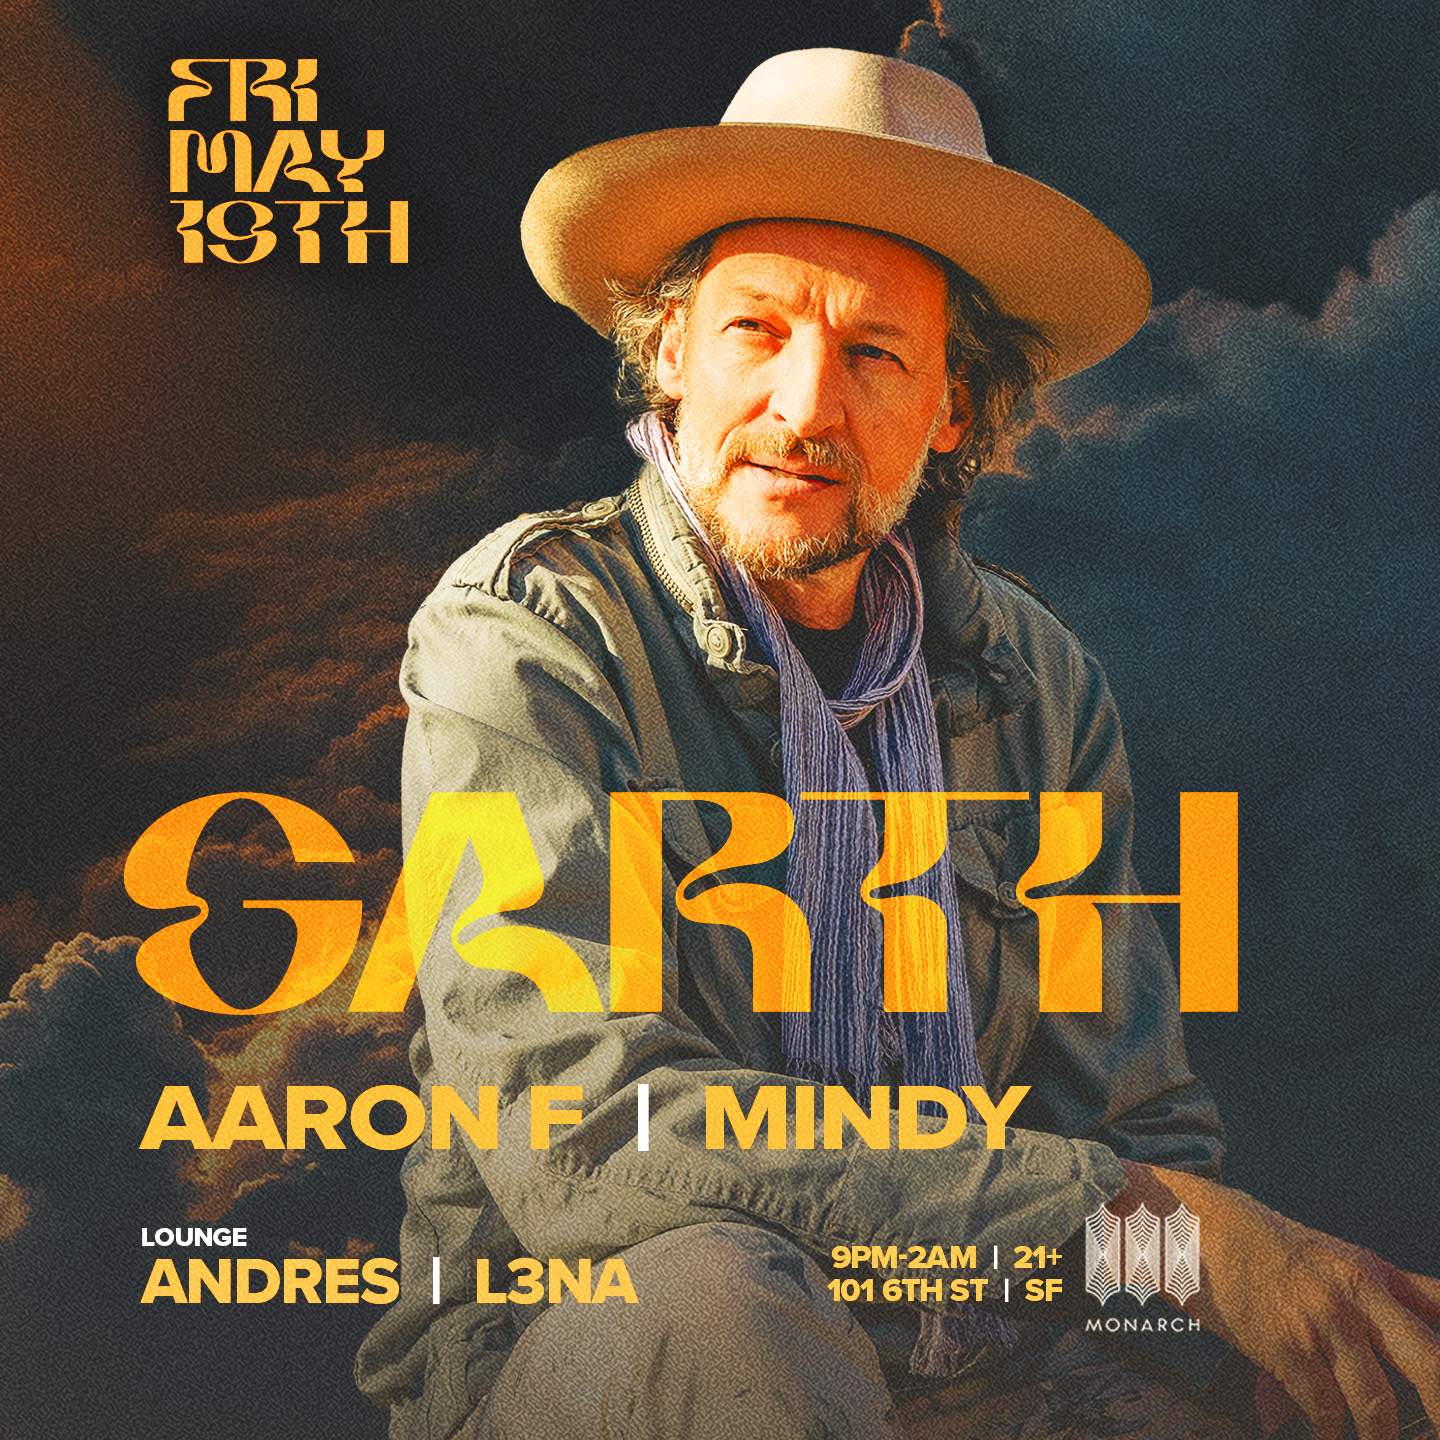 Garth - Aaron F - Mindy - Andrés - L3NA - フライヤー表